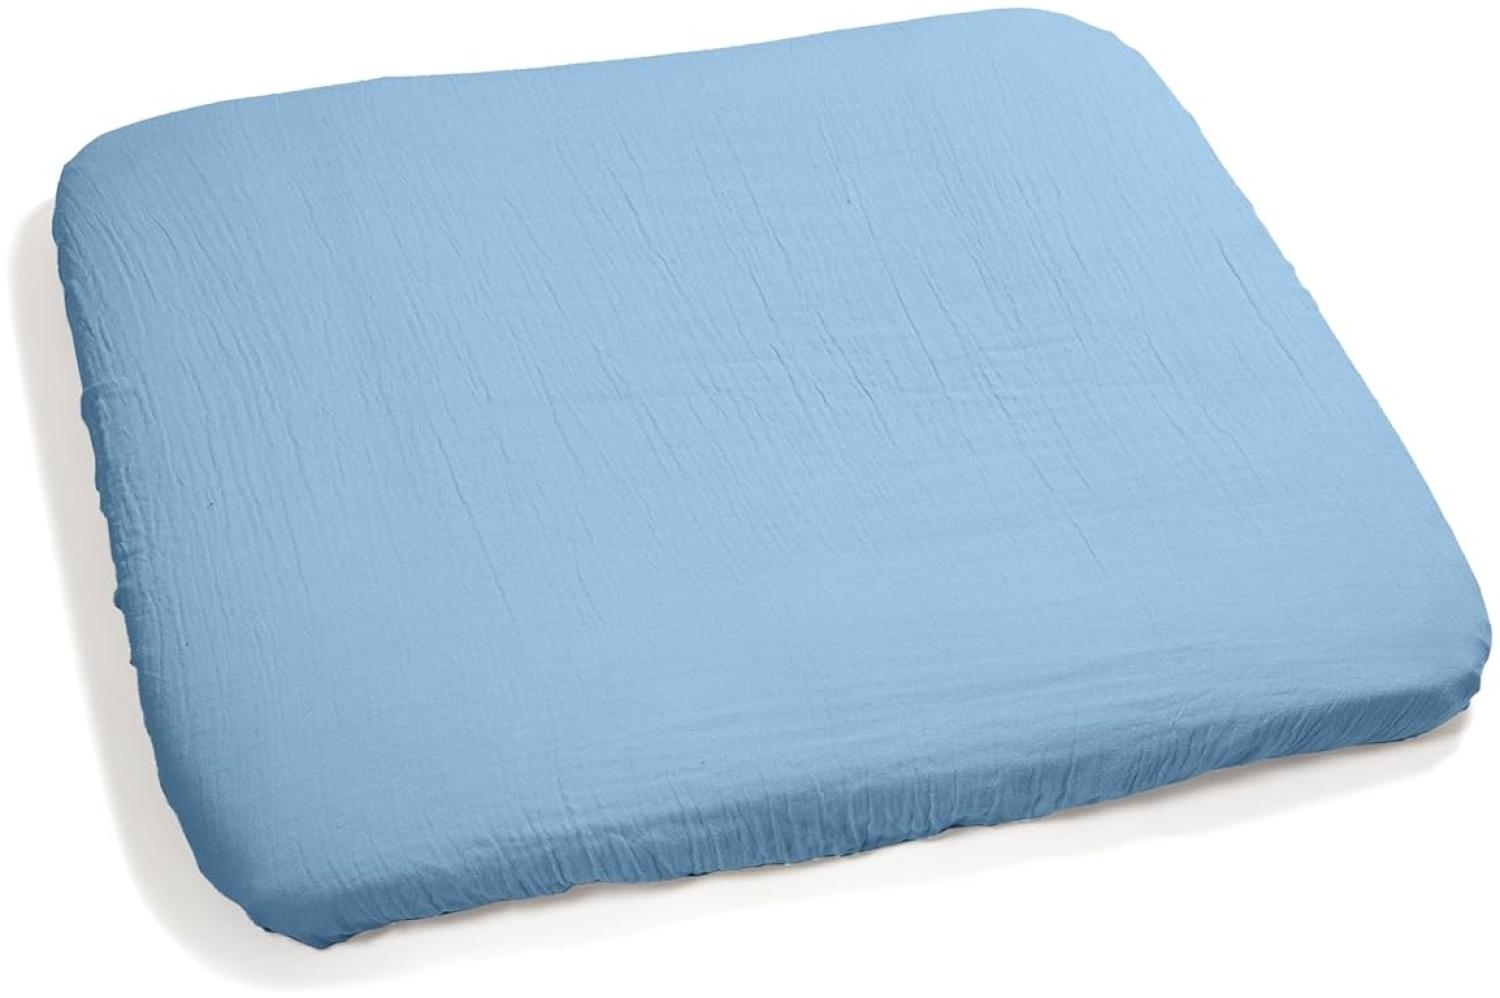 pic Bear Wickelauflagen Bezug 75x85cm - 100% Musselin Baumwolle, Elastischer Gummizug, Sanft & Schützend - Komfort für Babys (airy blue) Bild 1